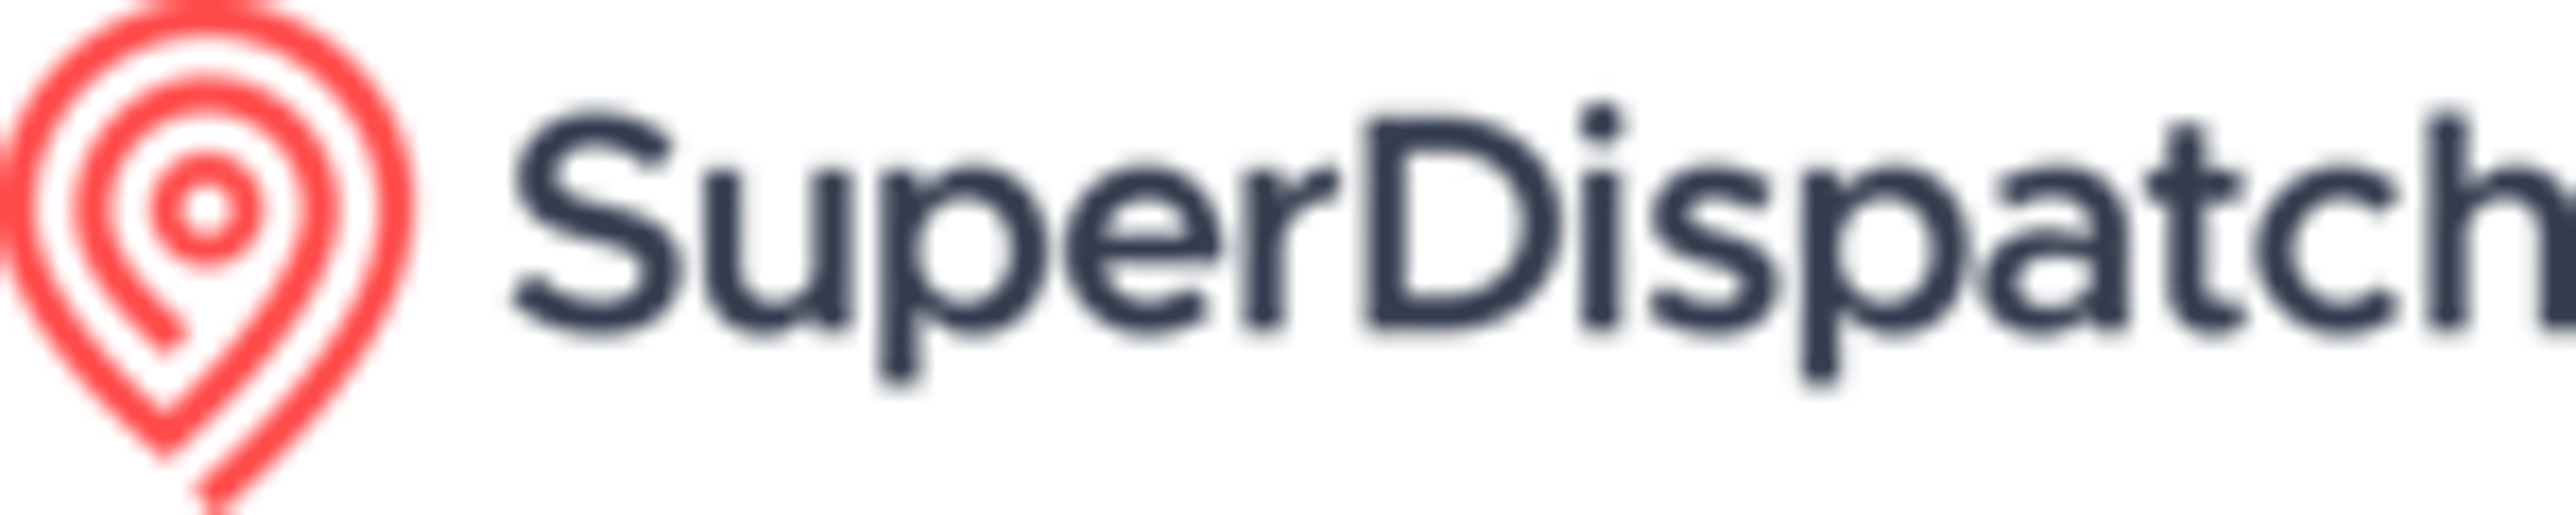 Super Dispatch Logo